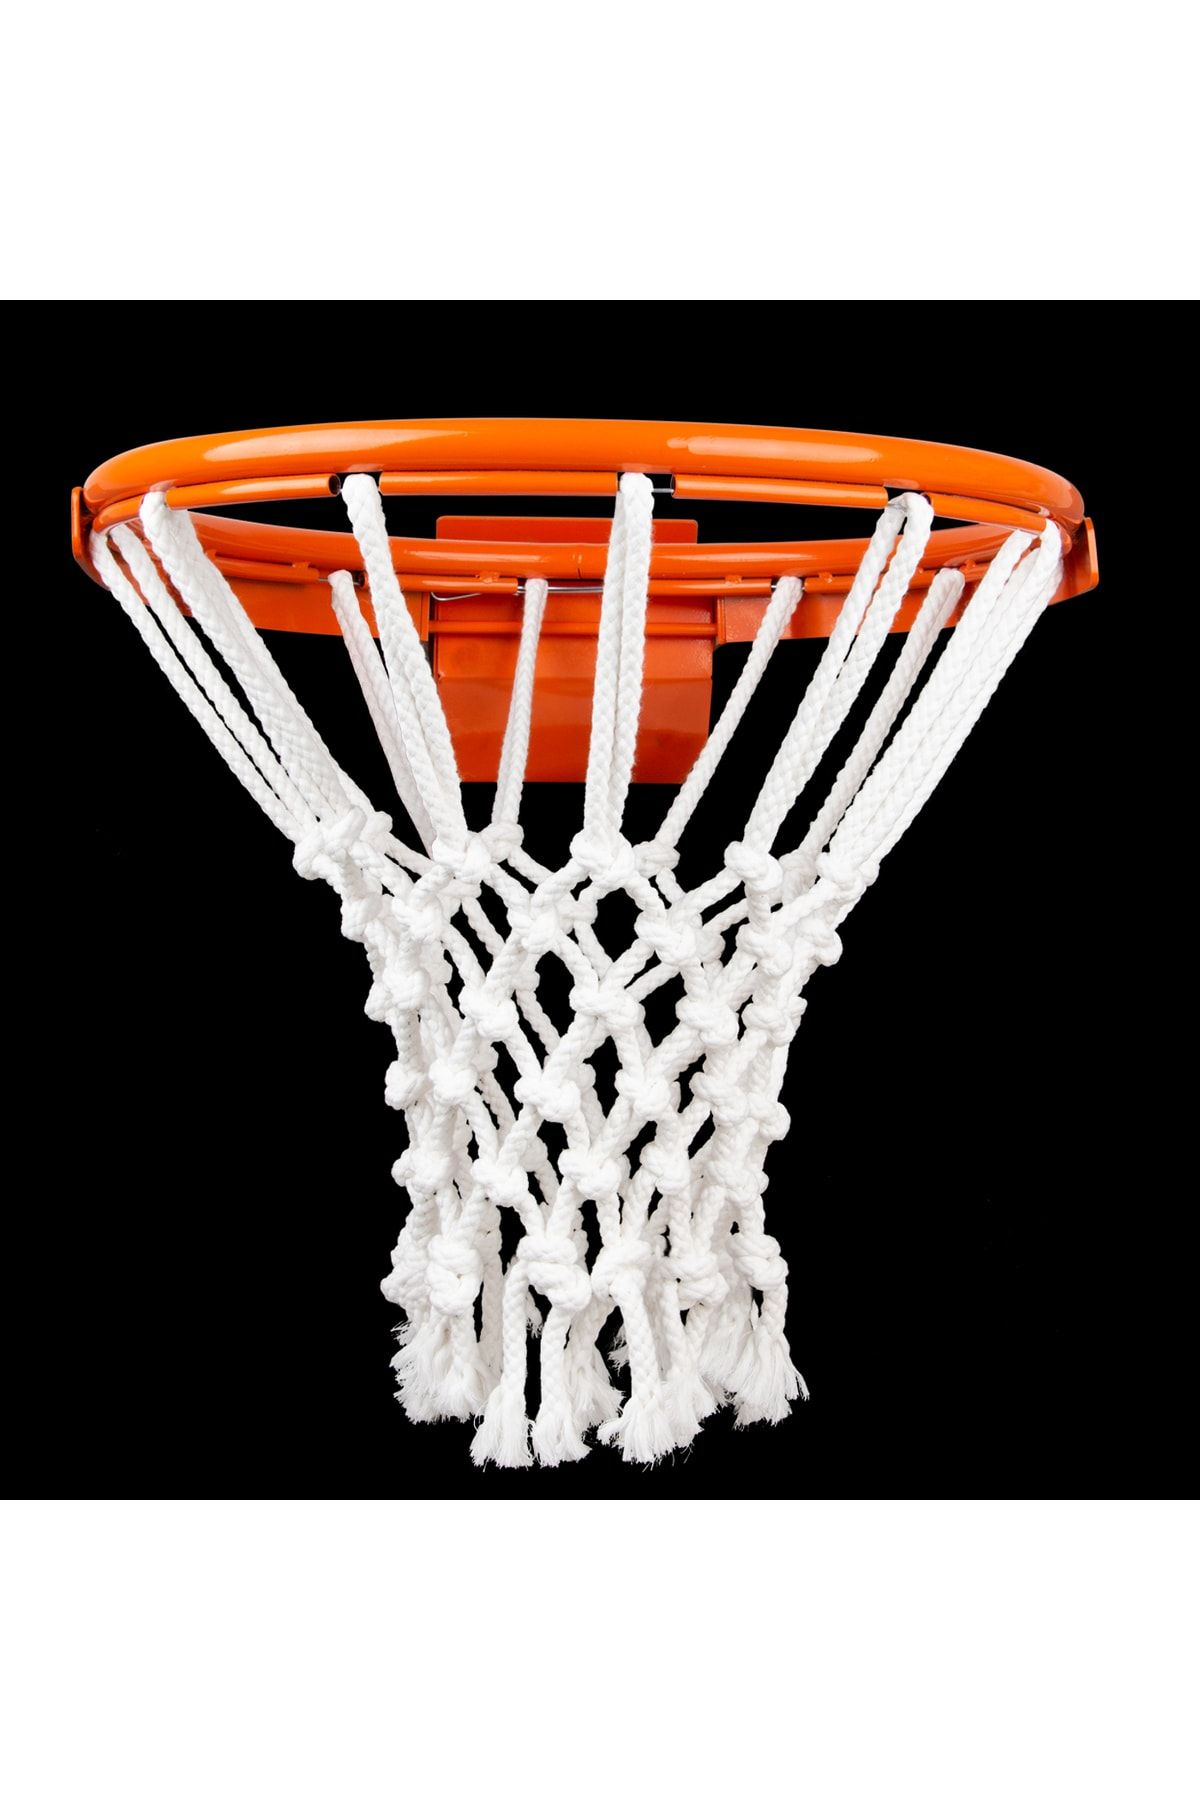 Nodes Basketbol Pota Filesi Ağı - Profesyonel - 10mm - Urgan - 2 Adet